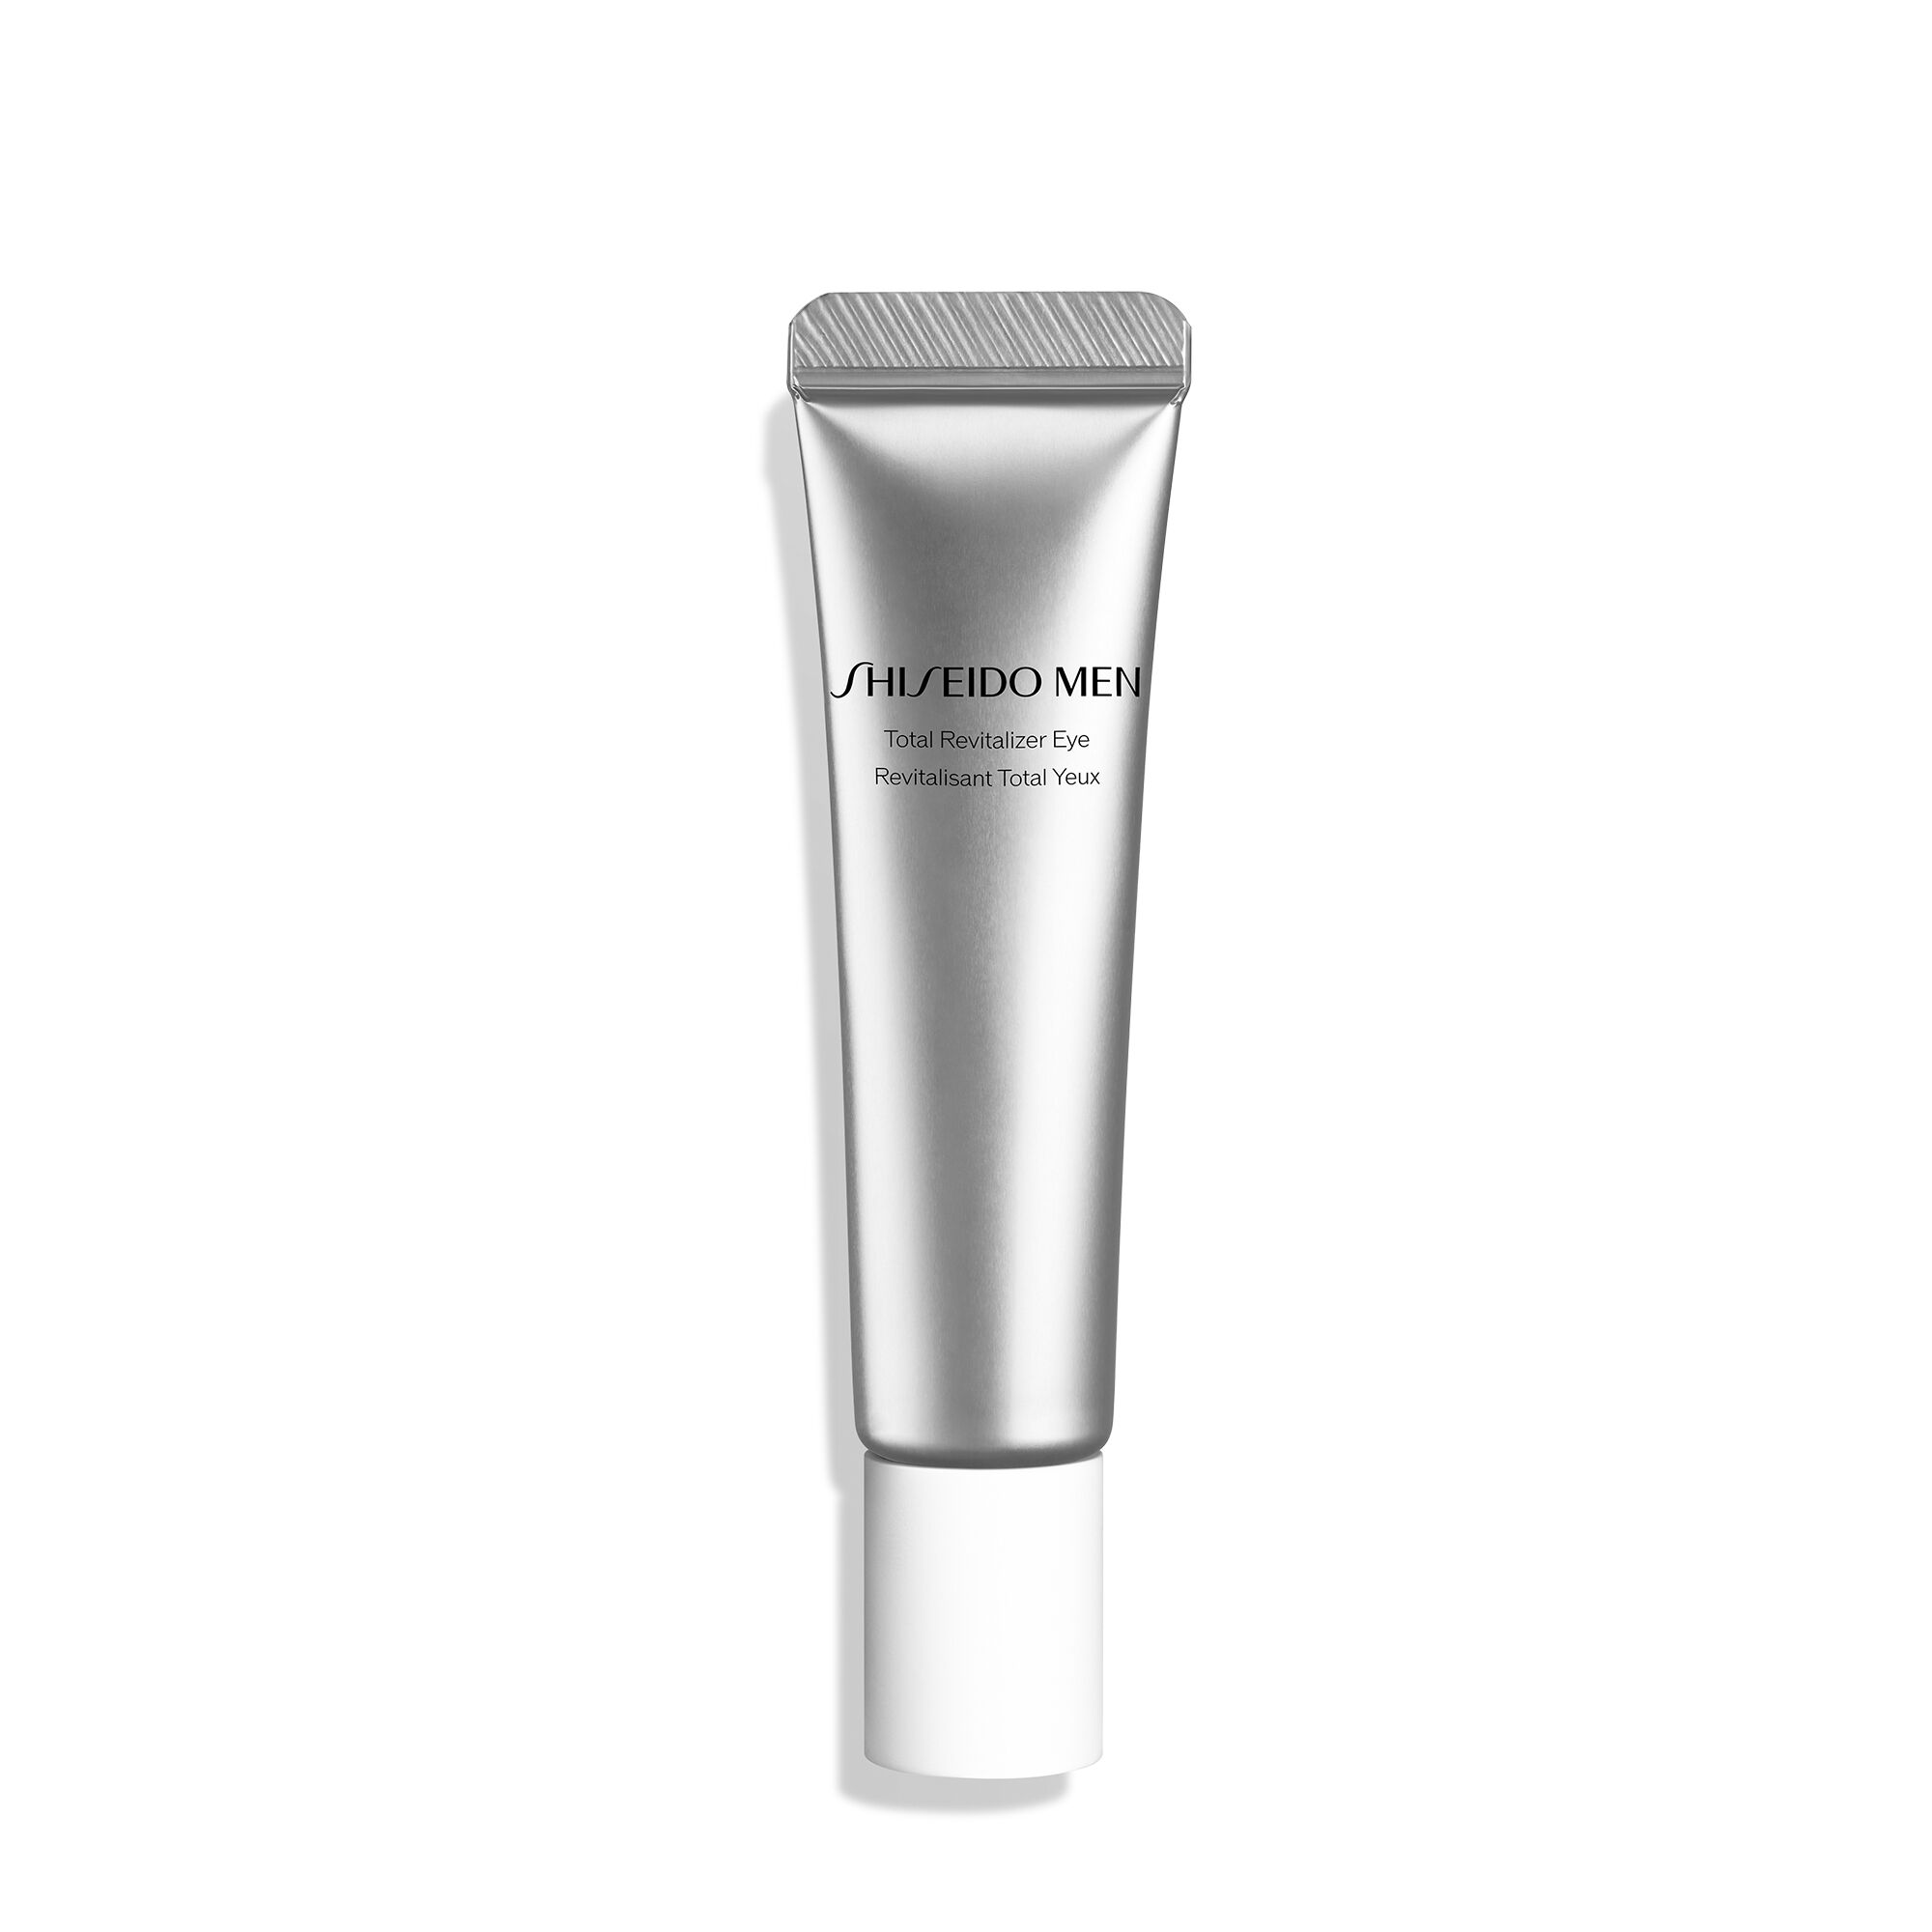 Shiseido Men Total Revitalizer Eye Cream - 15mL